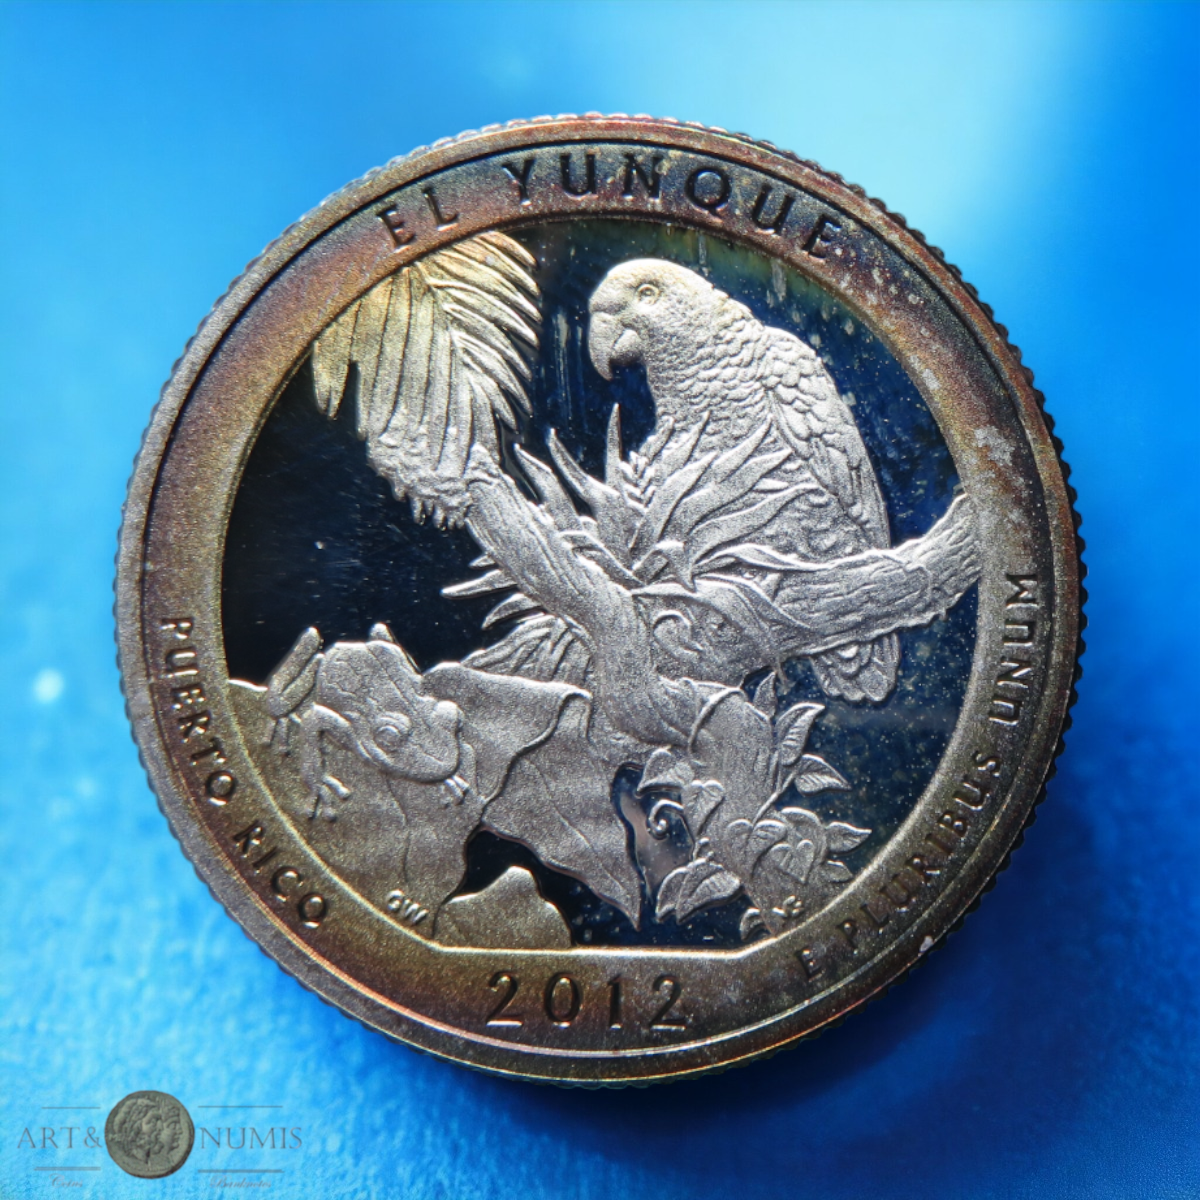 USA - Silver Quarter dollar Proof El Yunque 2012